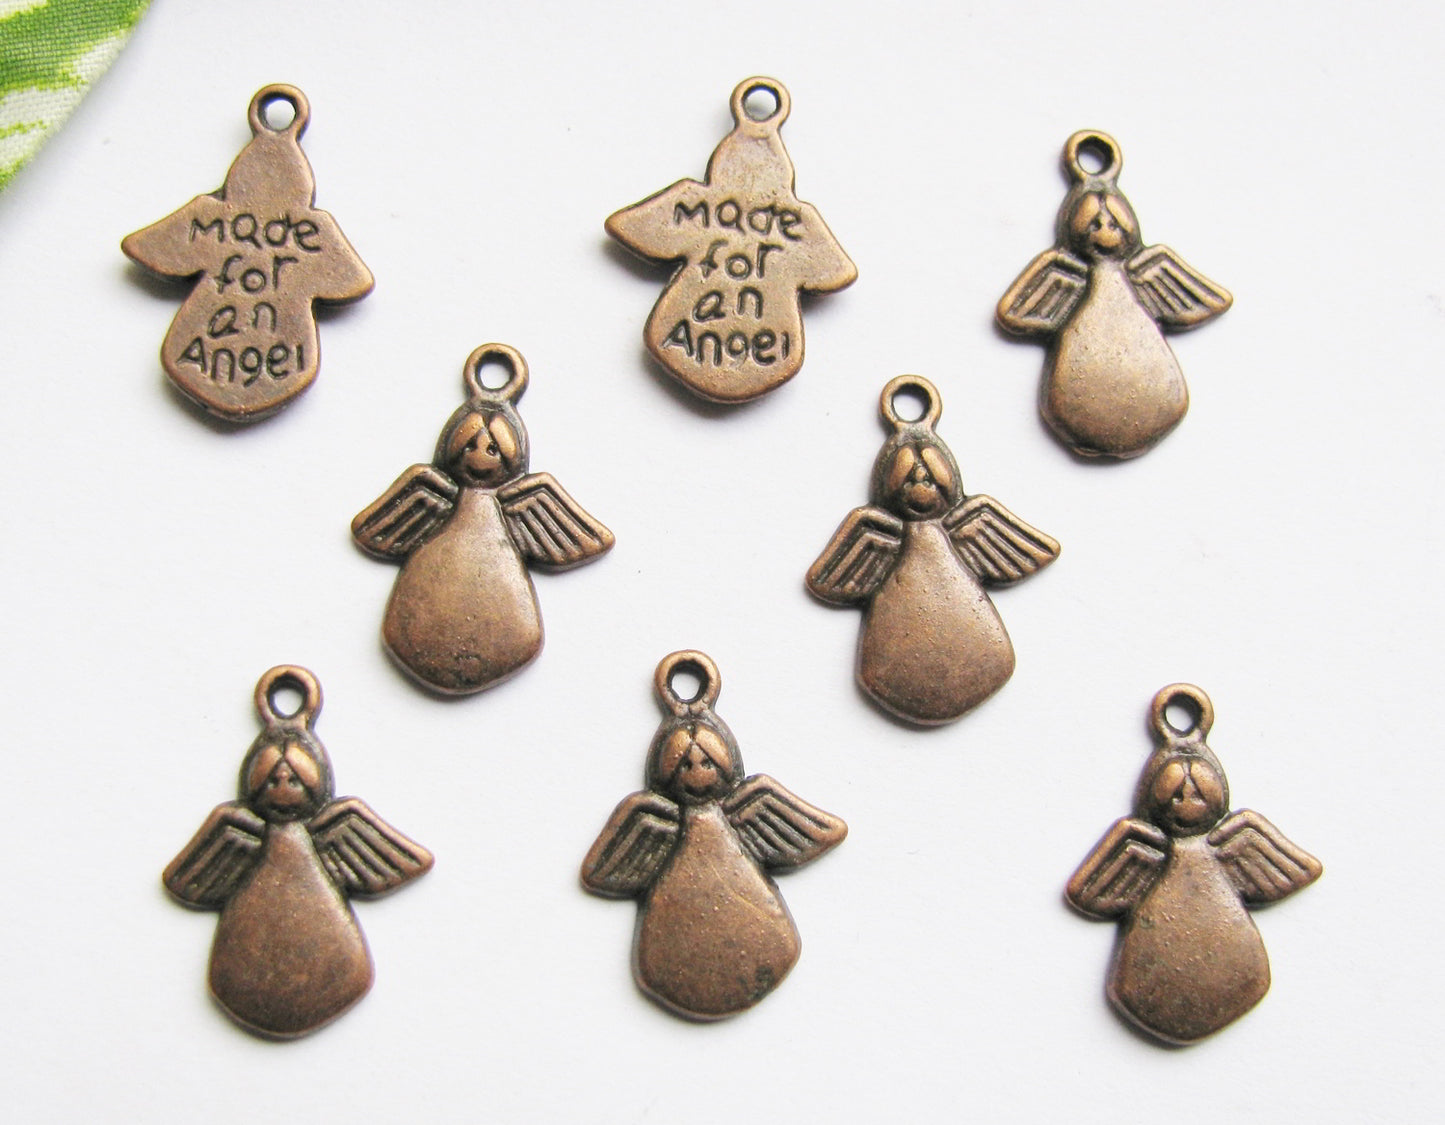 8 Metallanhänger, Made for an Angel Farbe Kupfer, Schmuck und Perlen basteln